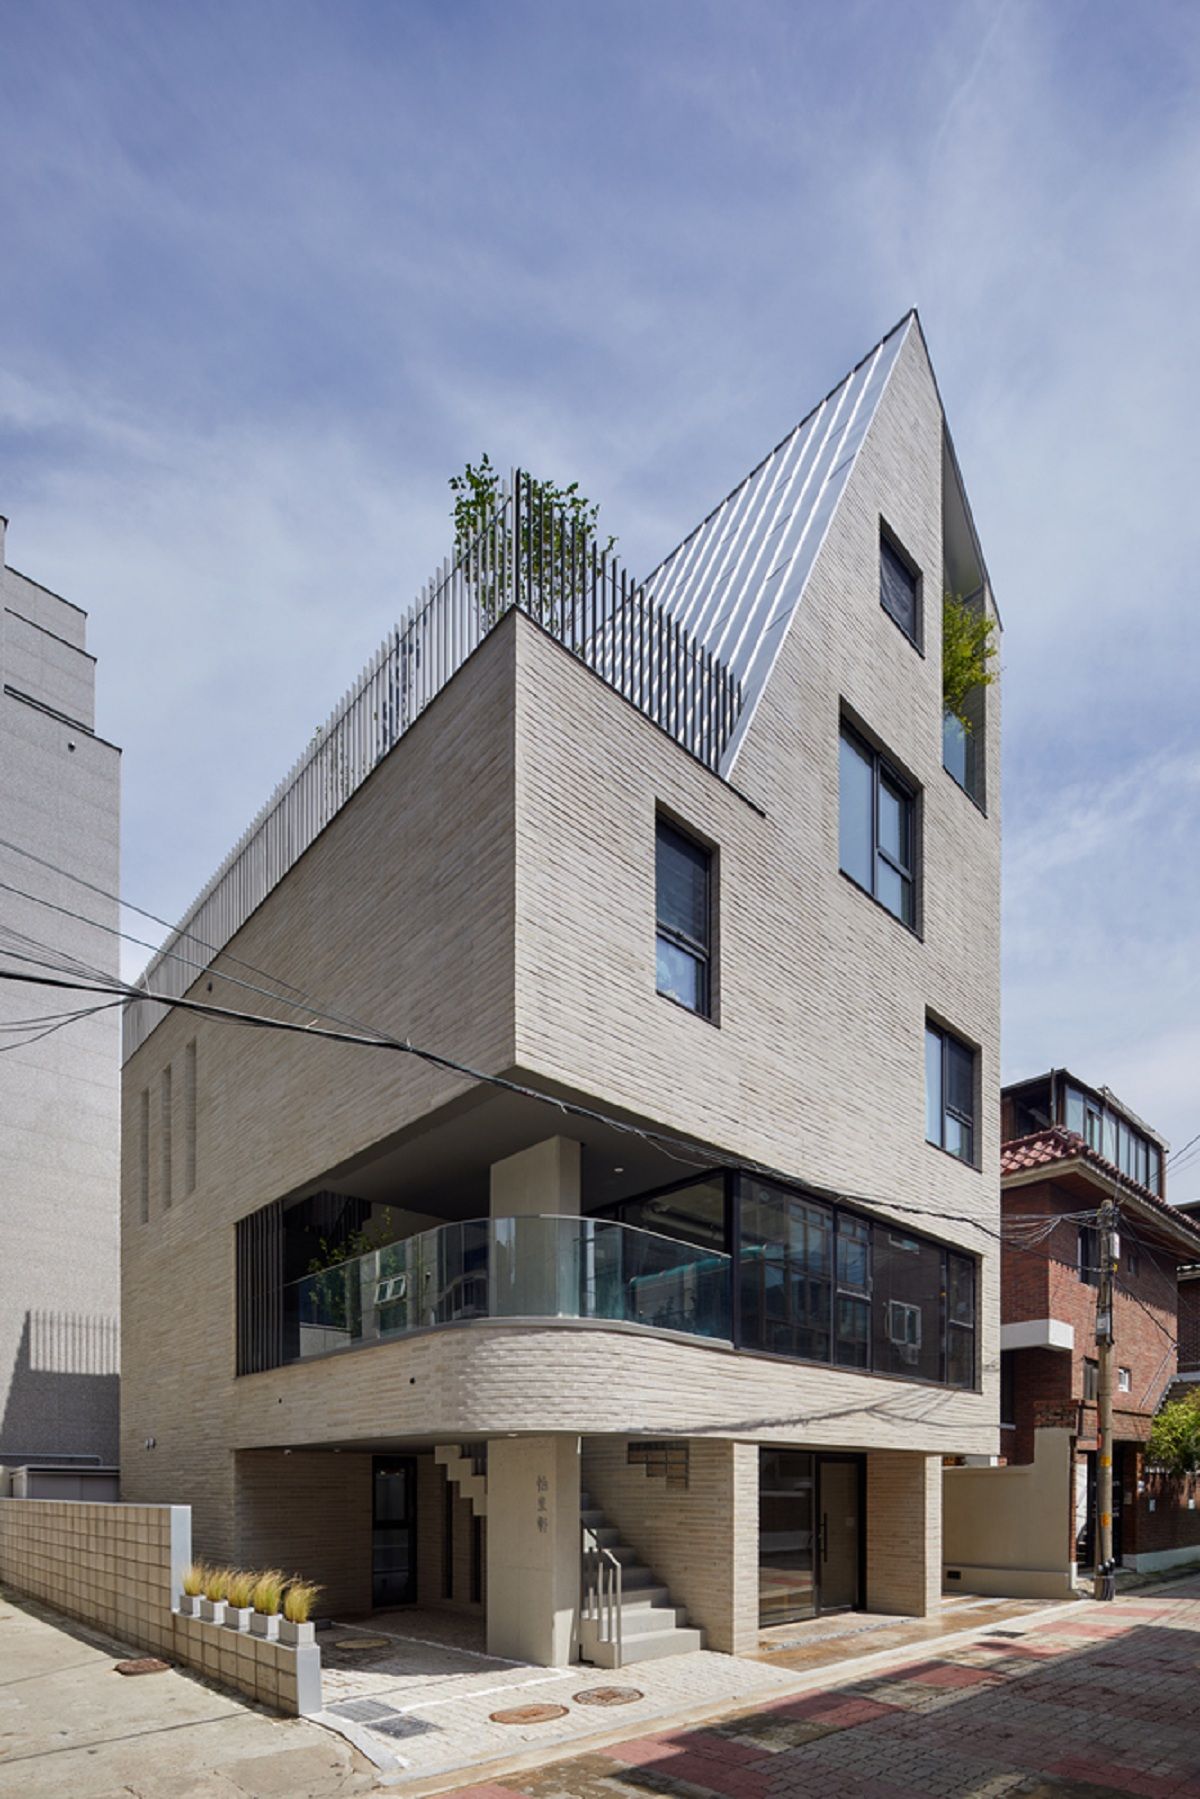 Lee Lee Heon - Tòa nhà phức hợp tái hiện những nét xưa trong đô thị hiện đại  | SOSU architects 